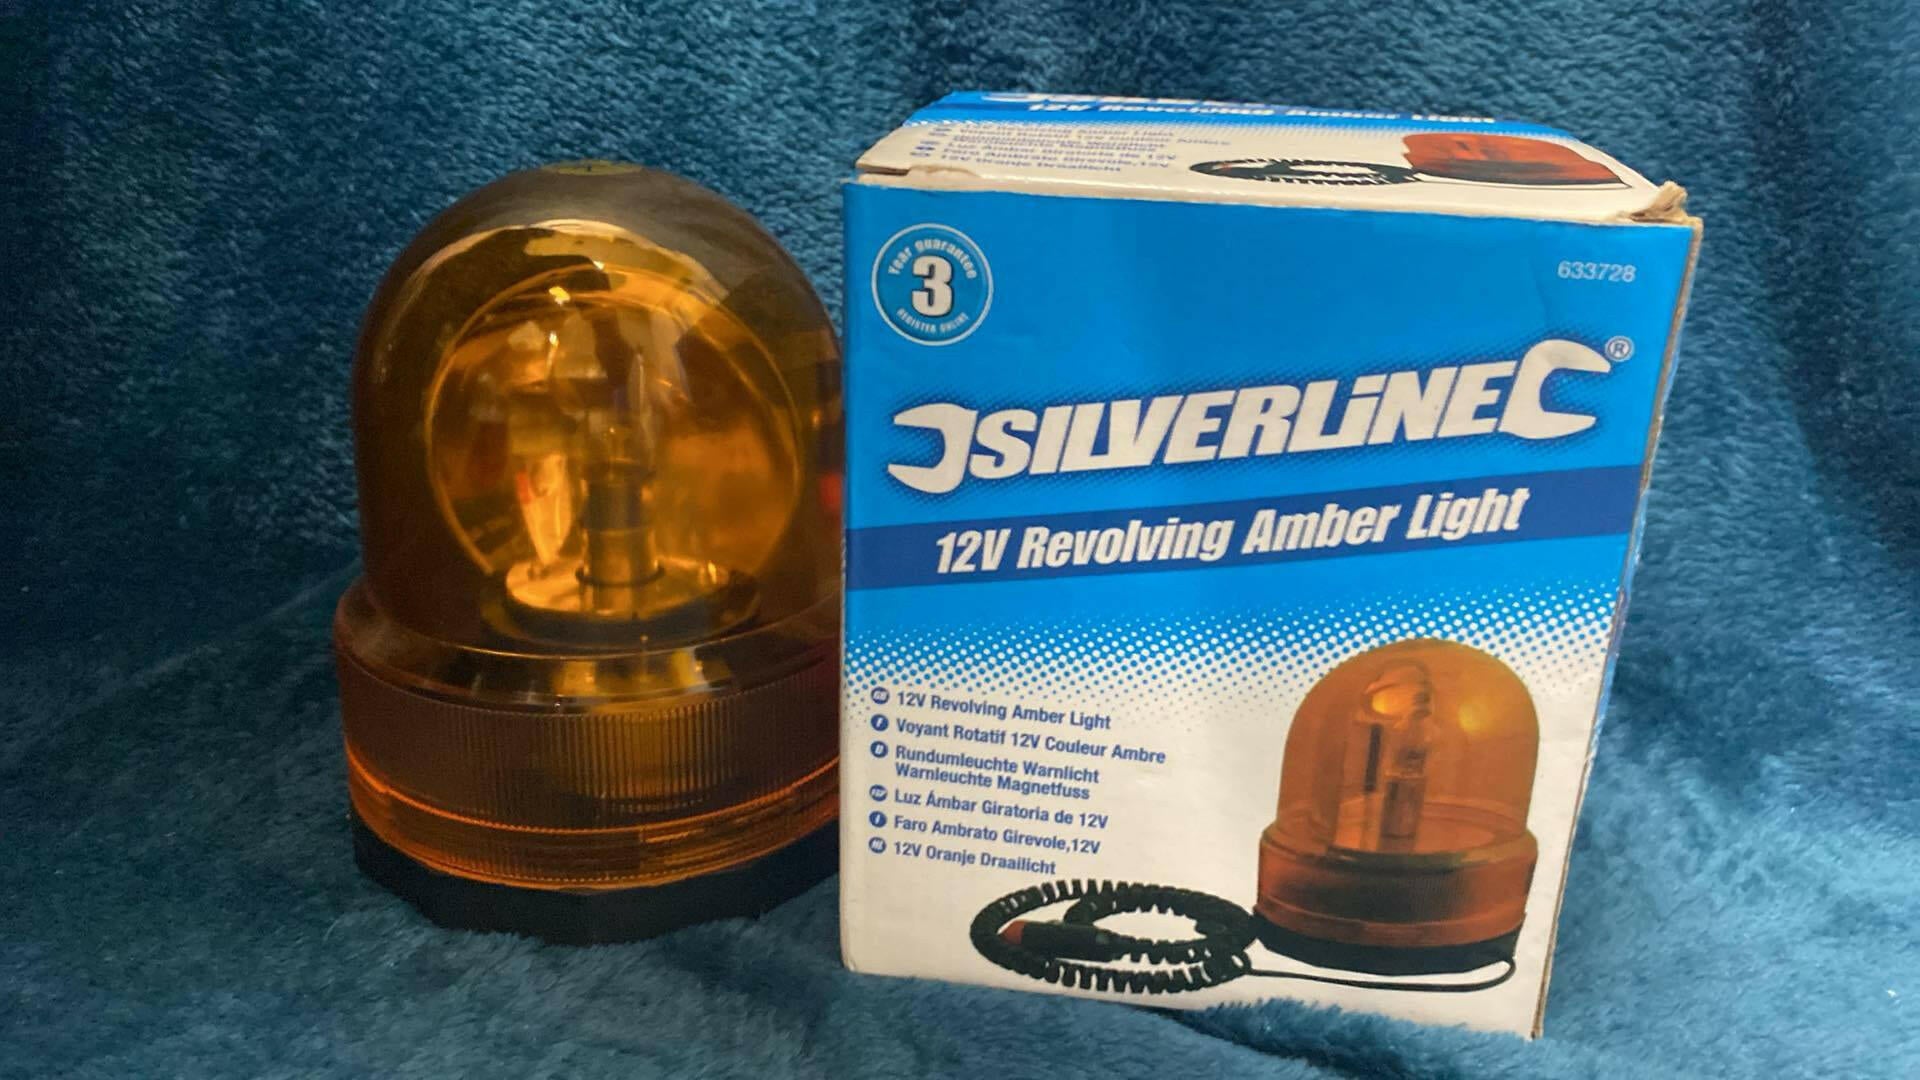 Silverline 12v revolving amber light